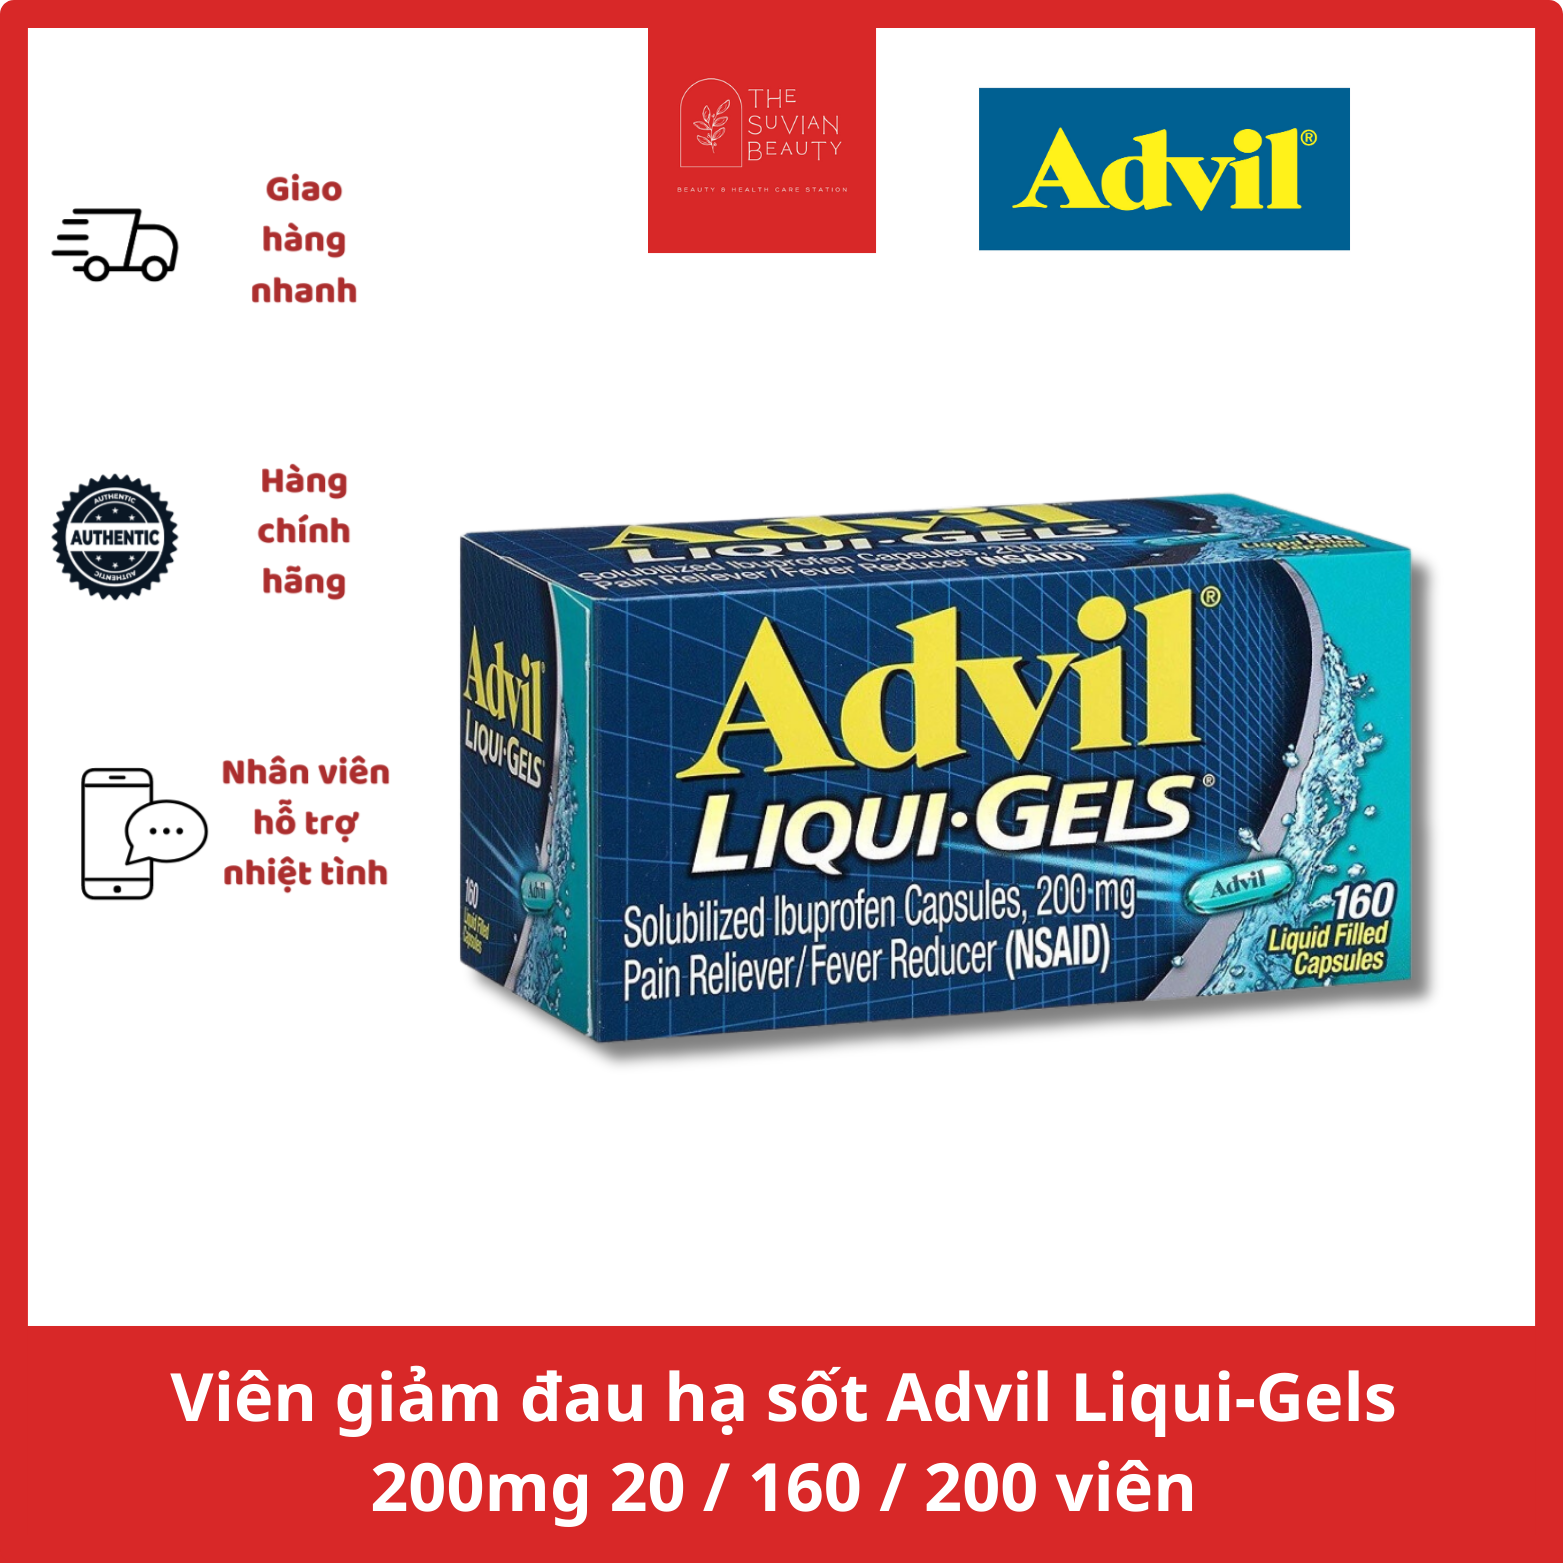 Viên giảm đau hạ sốt Advil Liqui-Gels 200mg - 20 160 200 viên